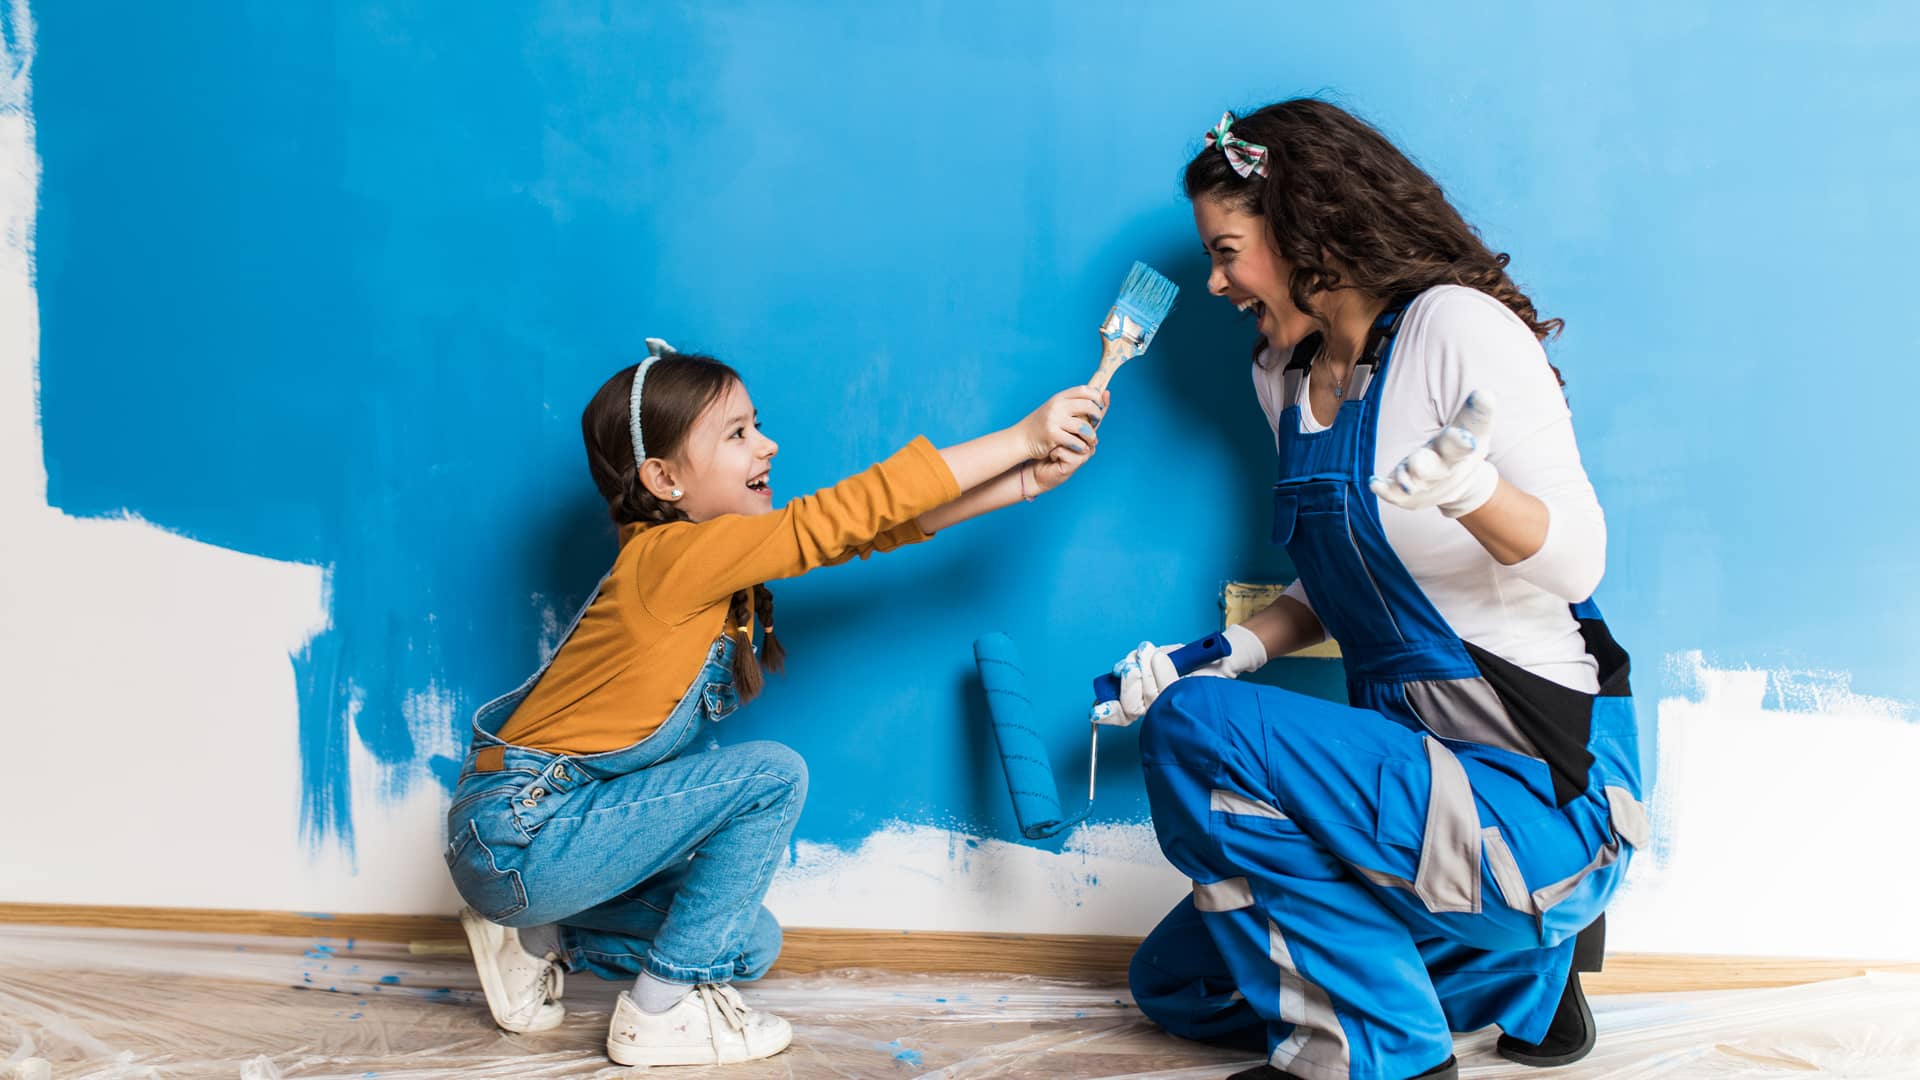 Una chica pintando la pared de color azul con su hija que representa la portabilidad de la compañía Xenet